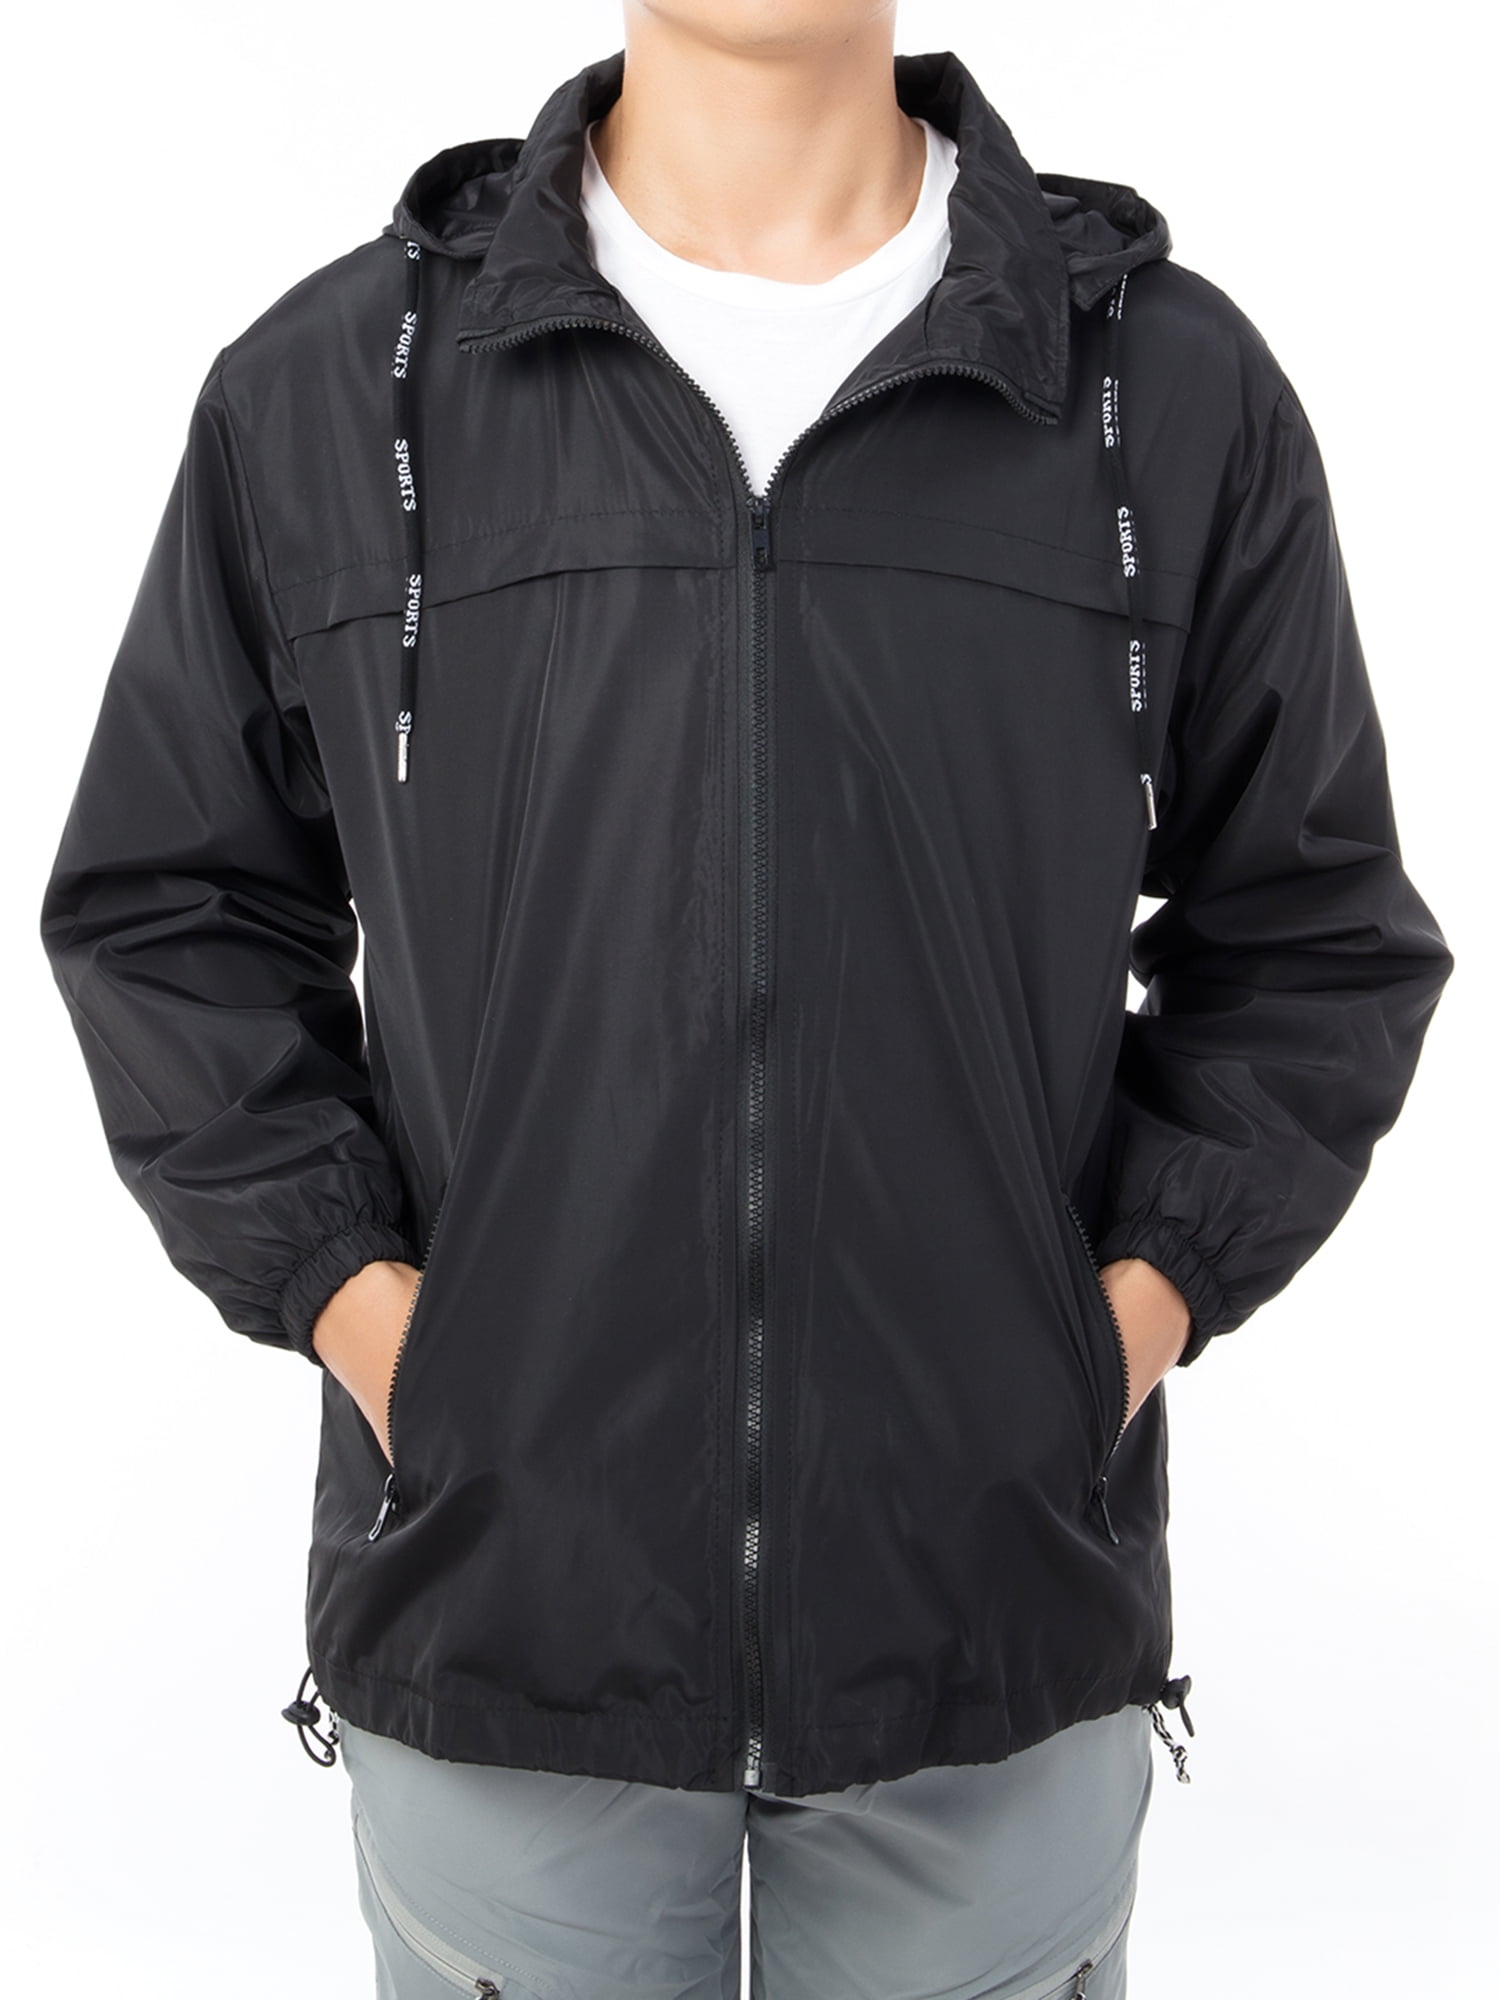 DODOING Men's Hooded Windbreaker Jacket Lightweight Jacket Zip Up